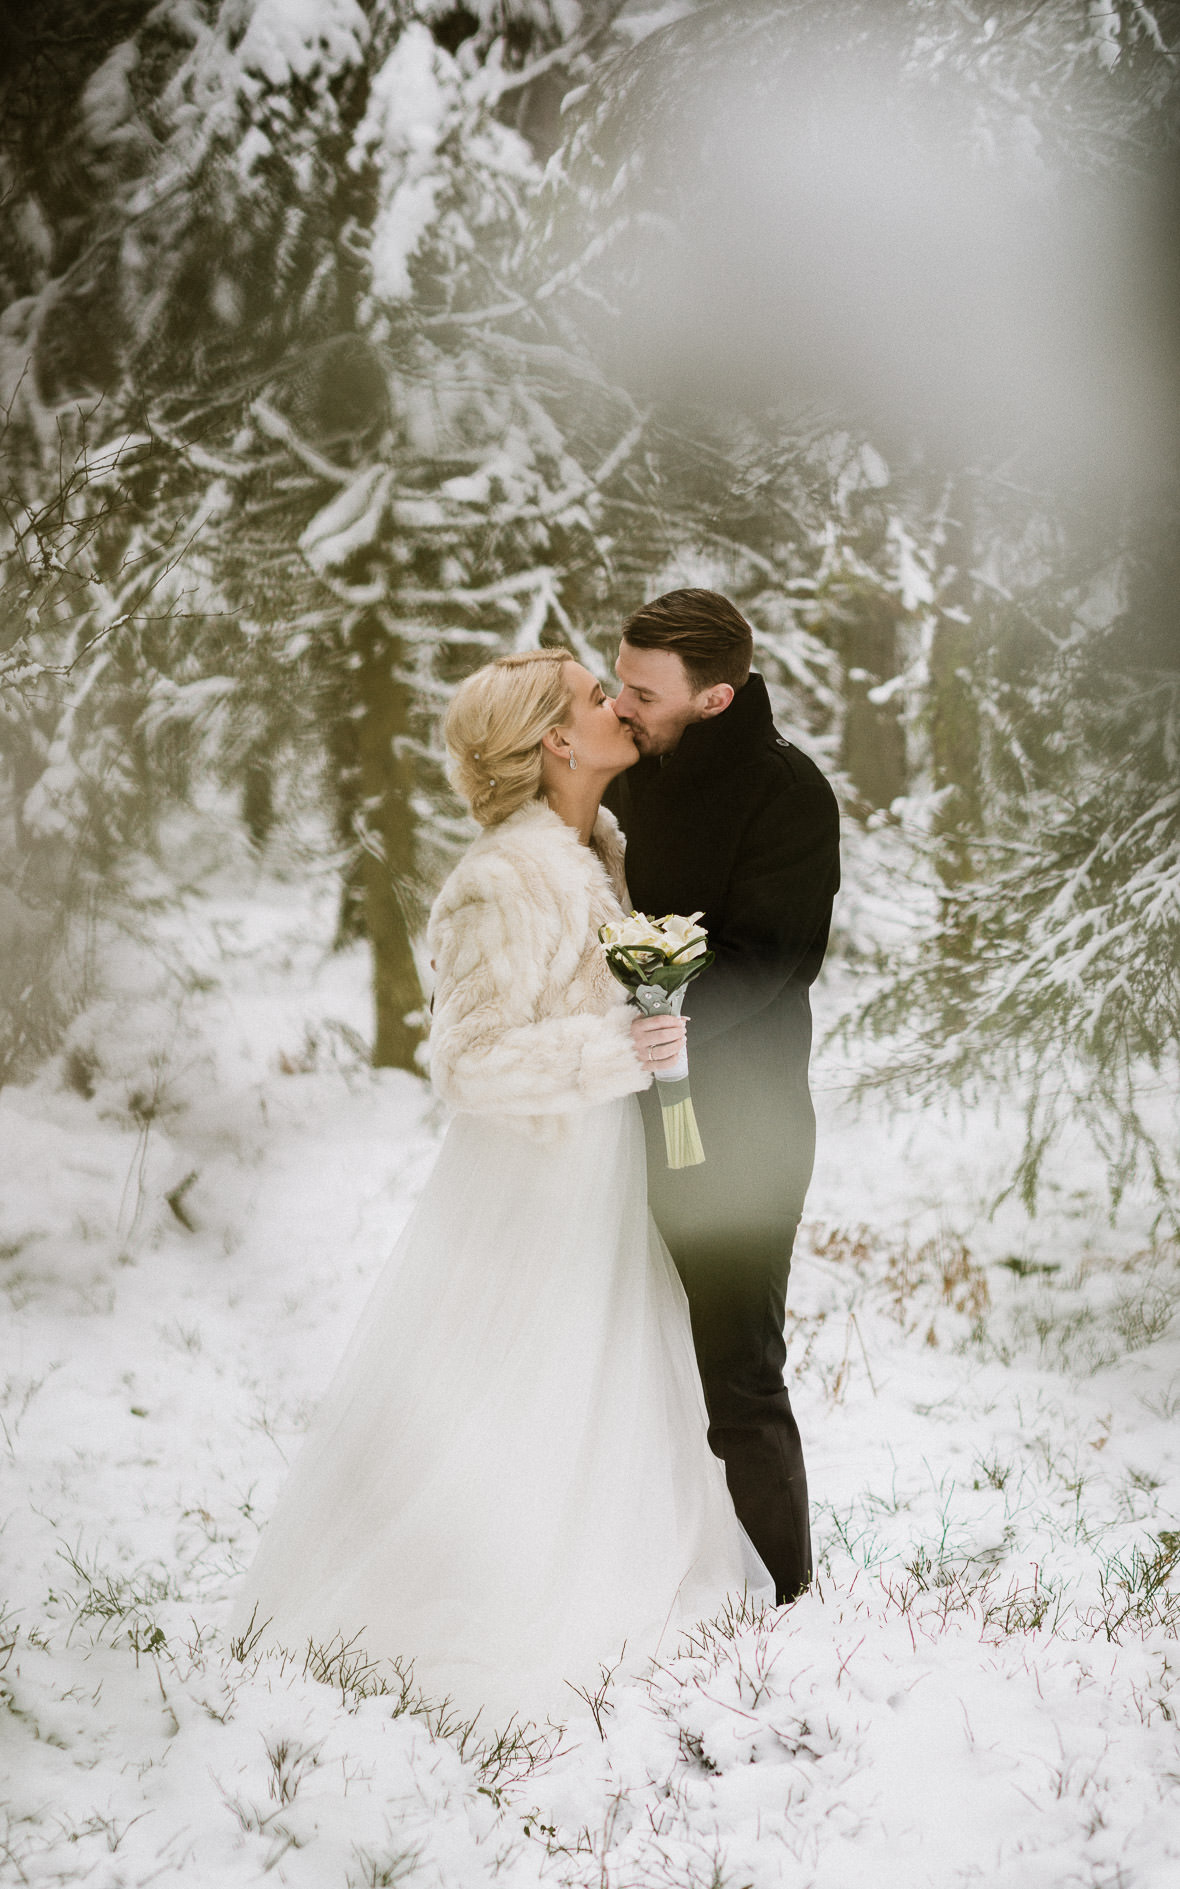 Kyssande brudpar i snön - vinterbröllopsfoto av bröllopsfotograf Johan Lindqvist